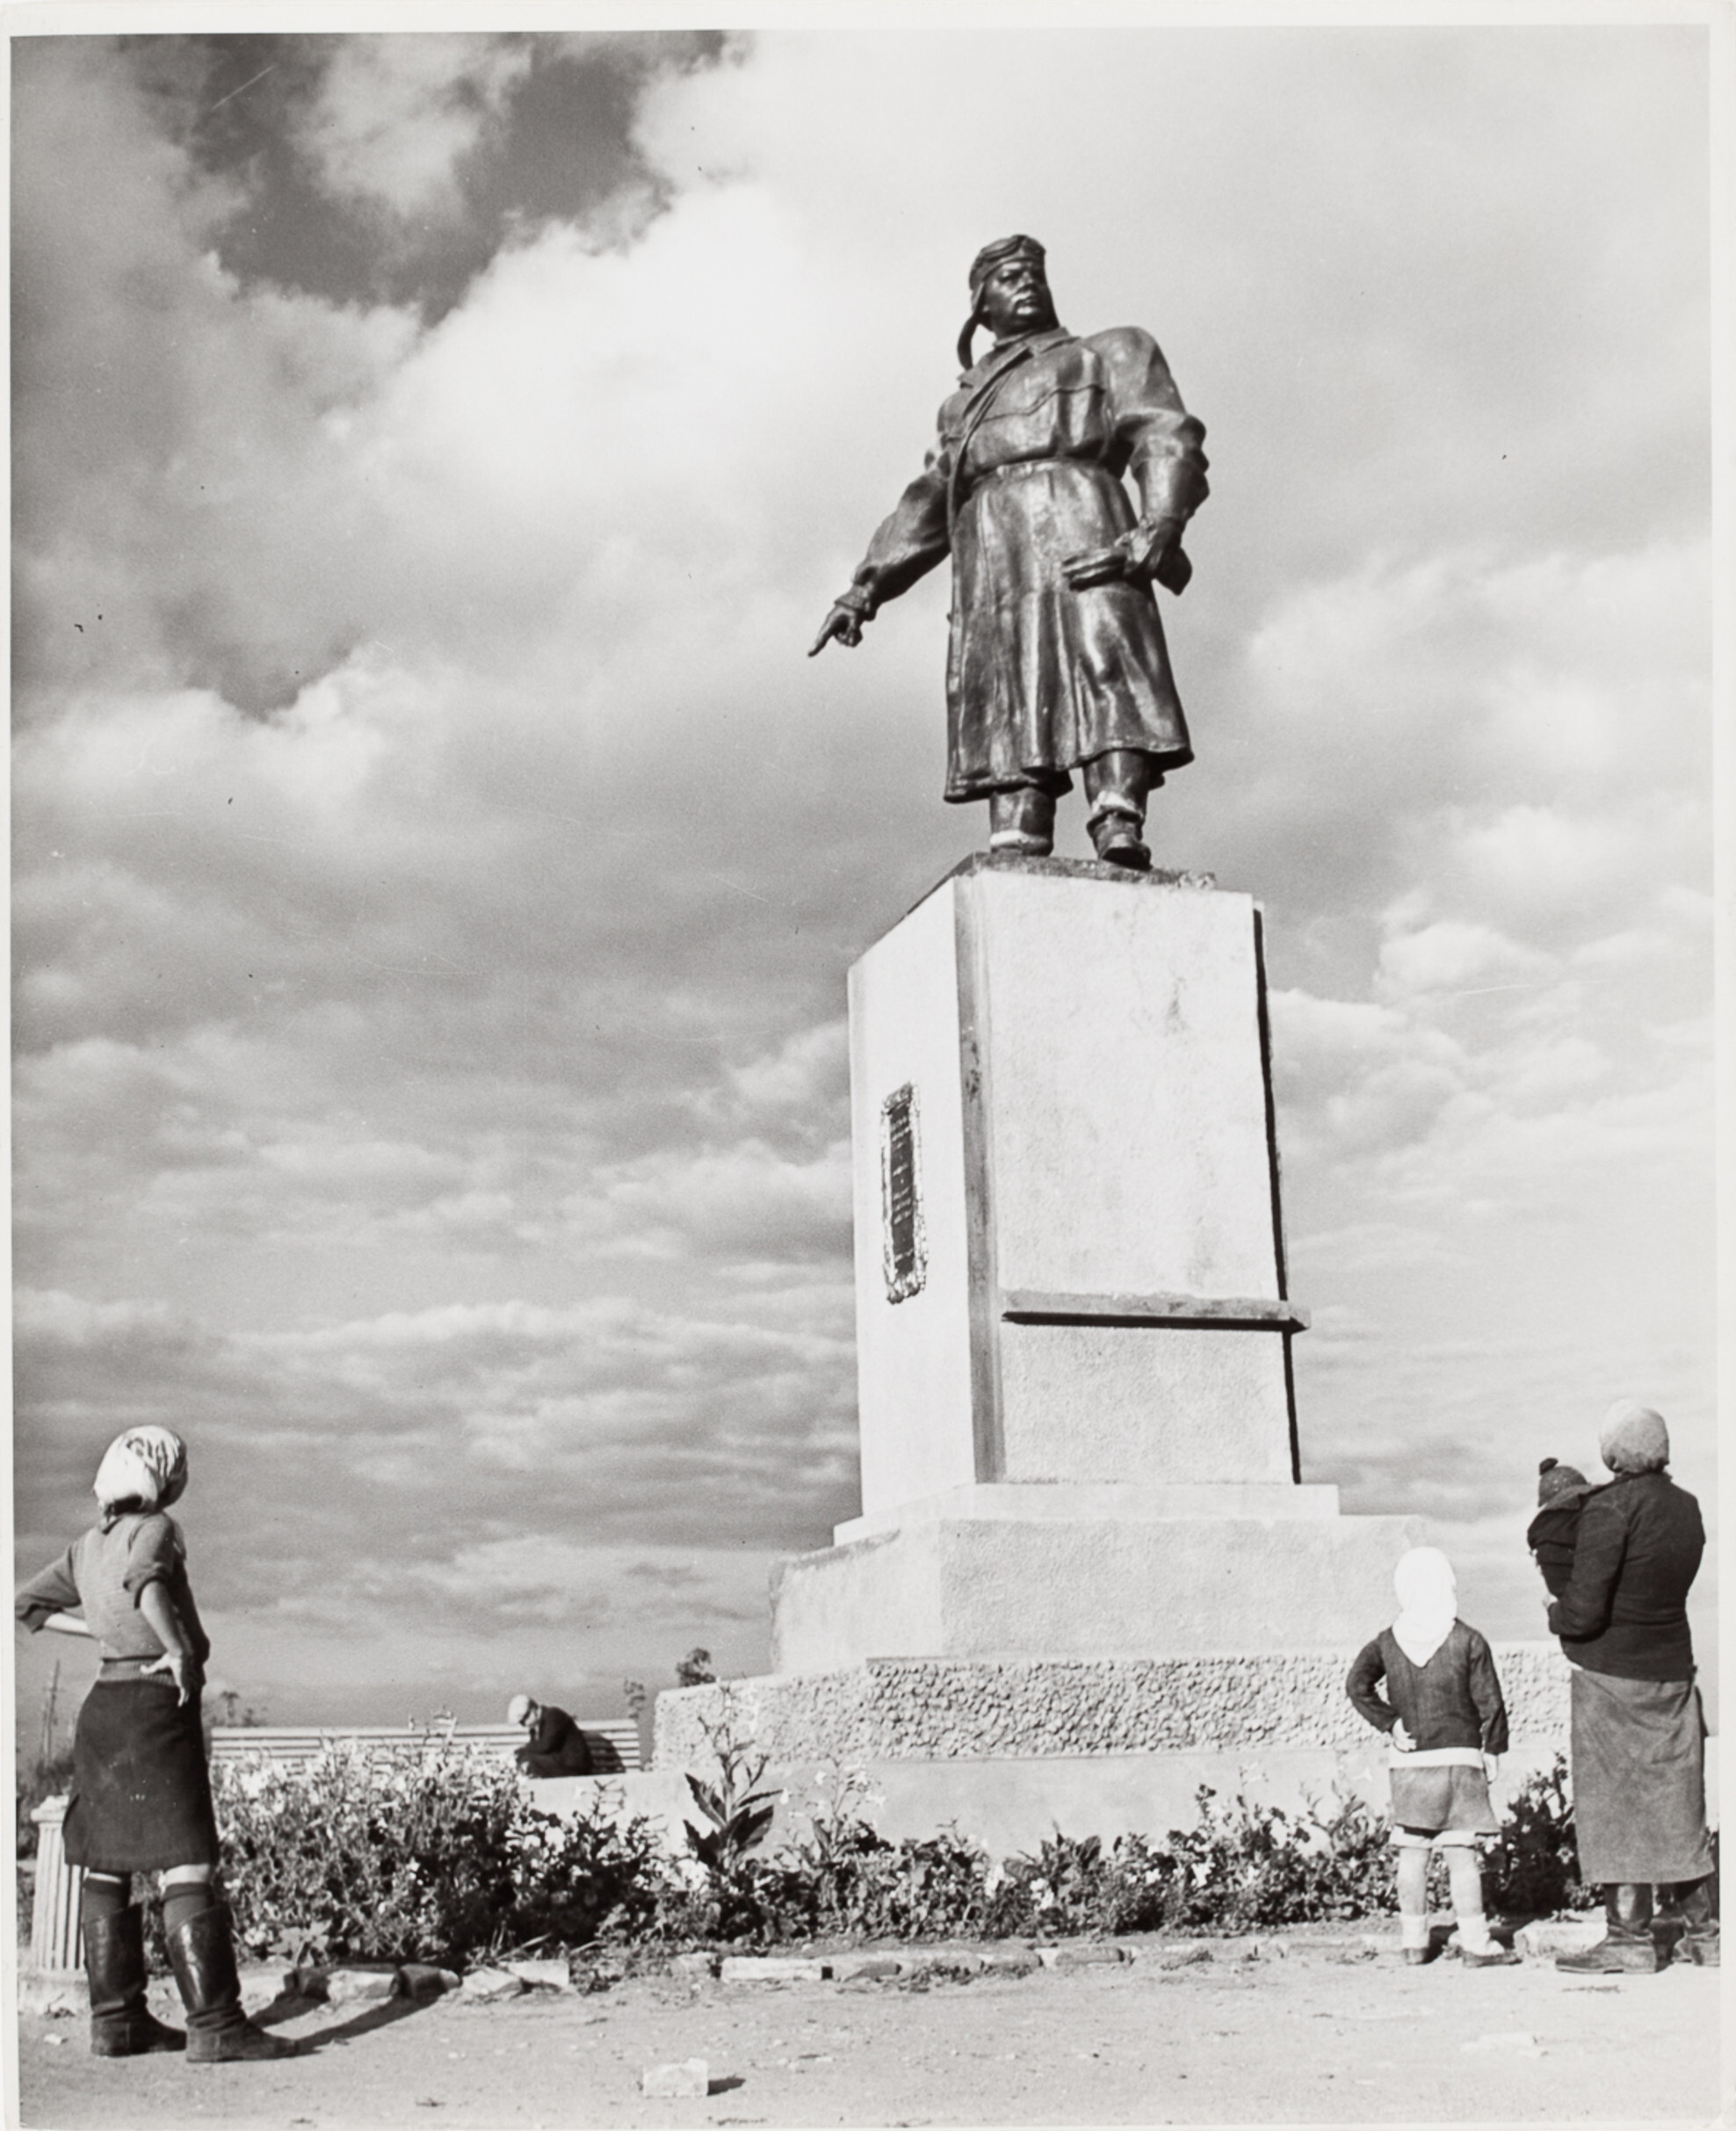 Женщины и дети смотрят на статую летчика Красной Армии, пролетевшего над Северным полюсом перед Великой Отечественной войной, Сталинград, СССР, 1947 год. Фотограф Роберт Капа